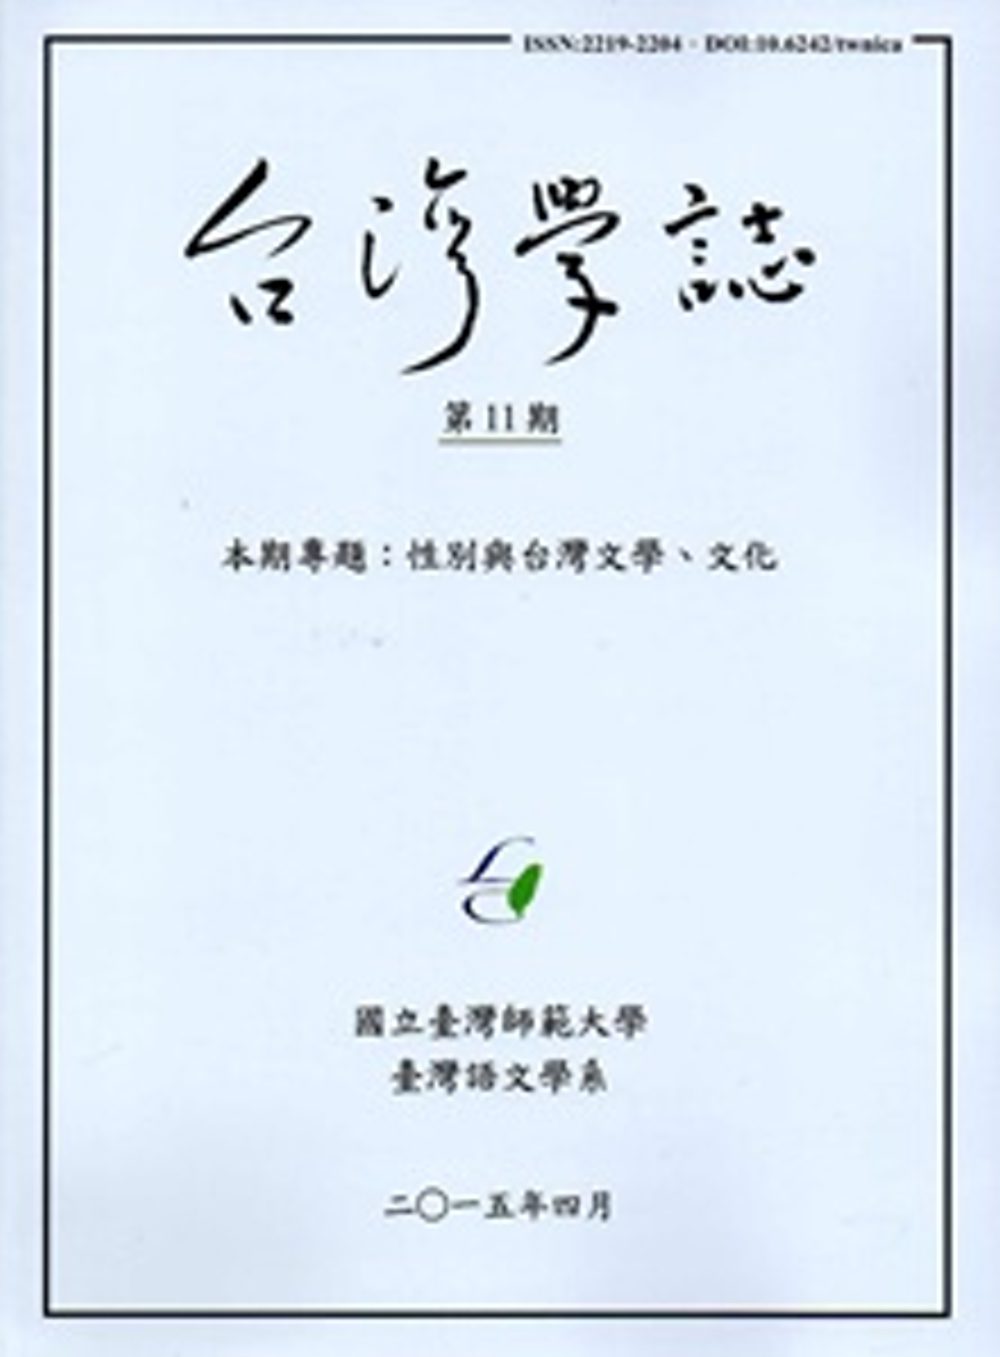 台灣學誌半年刊第11期(2015/4)